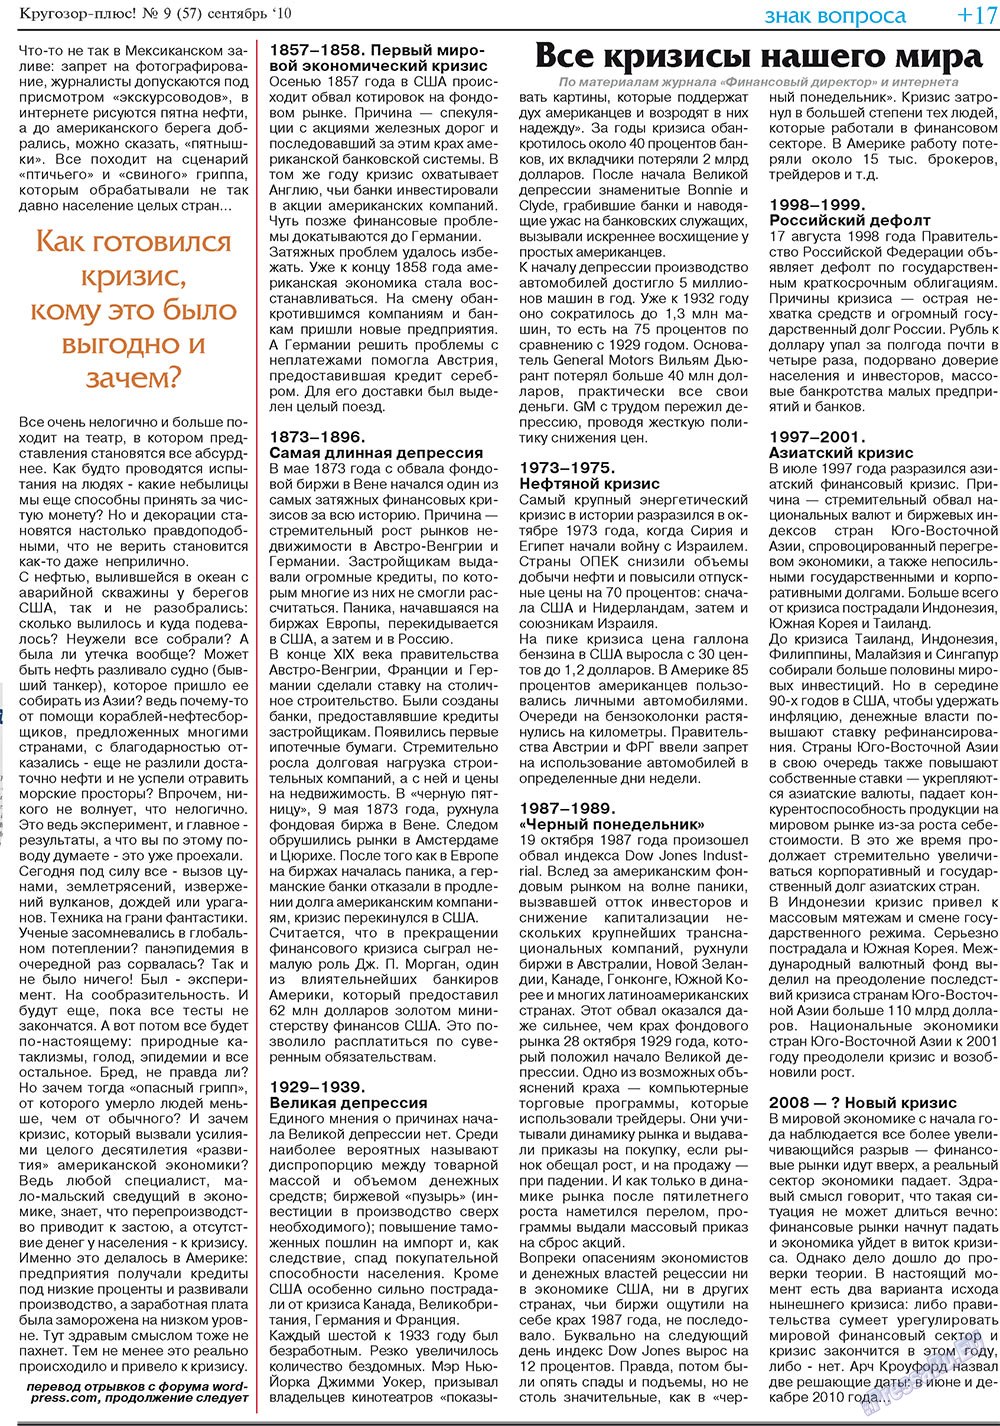 Кругозор плюс!, газета. 2010 №9 стр.33